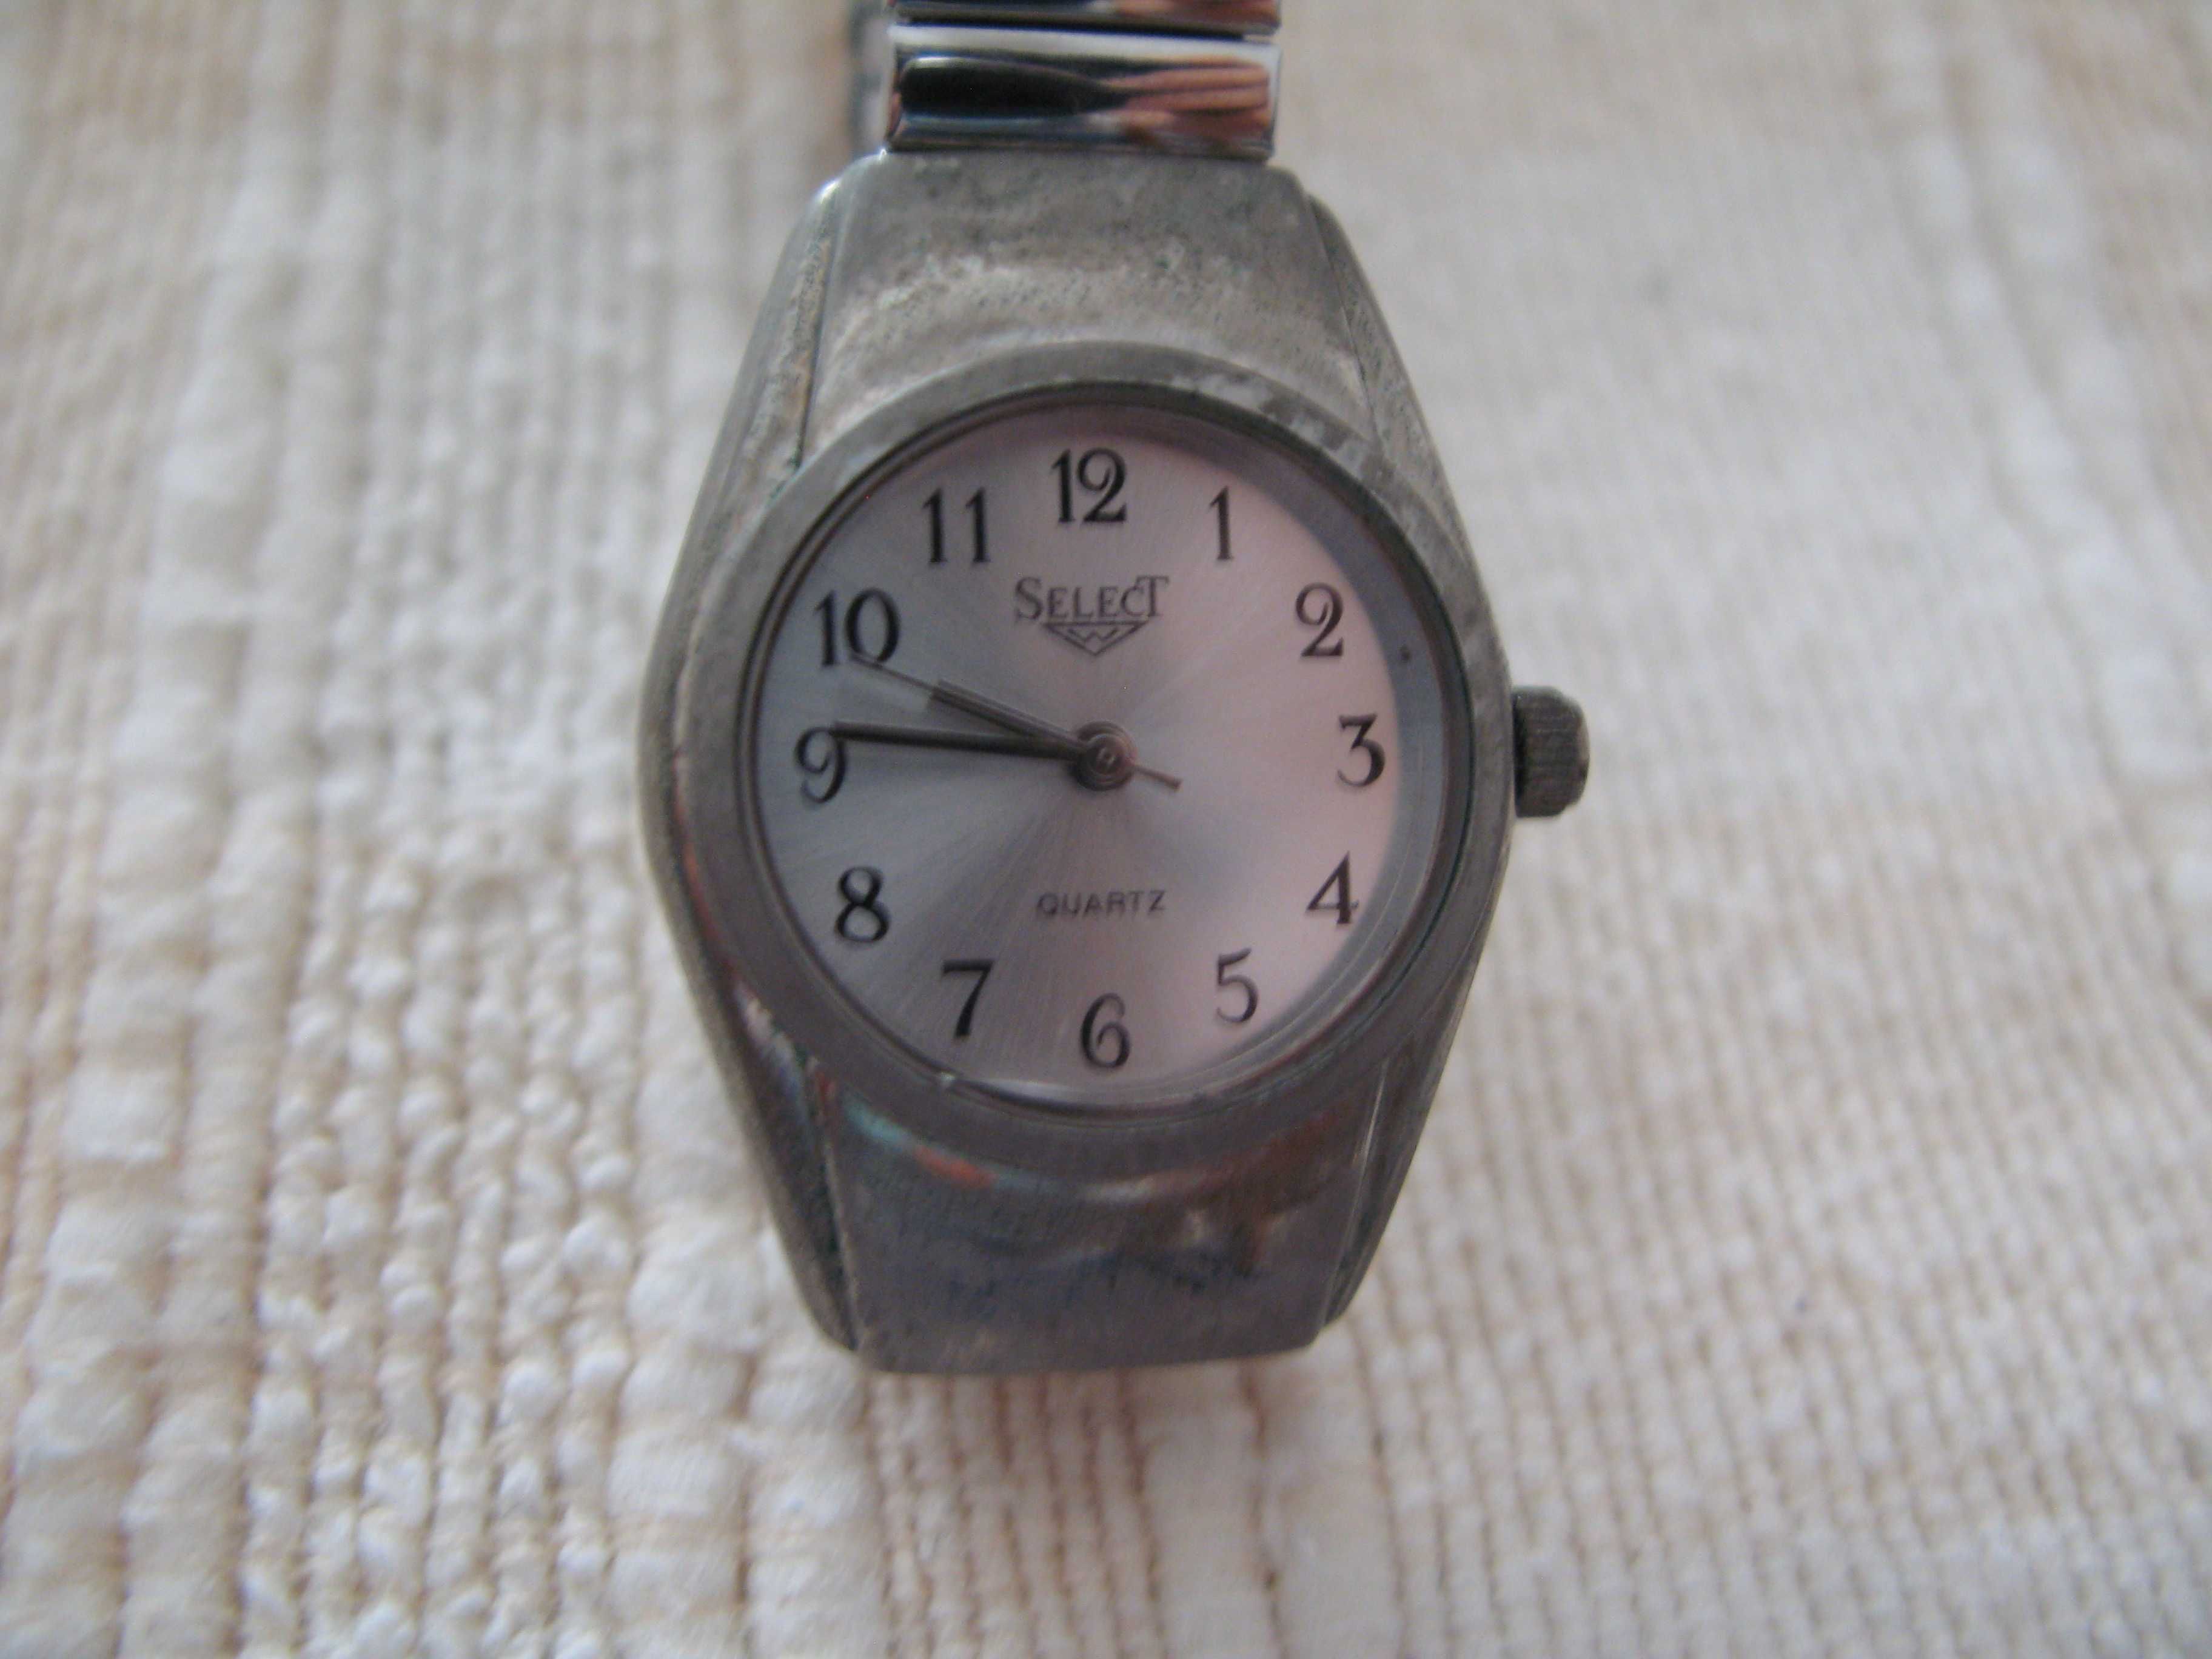 Relógio de senhora da marca SELECT (original).